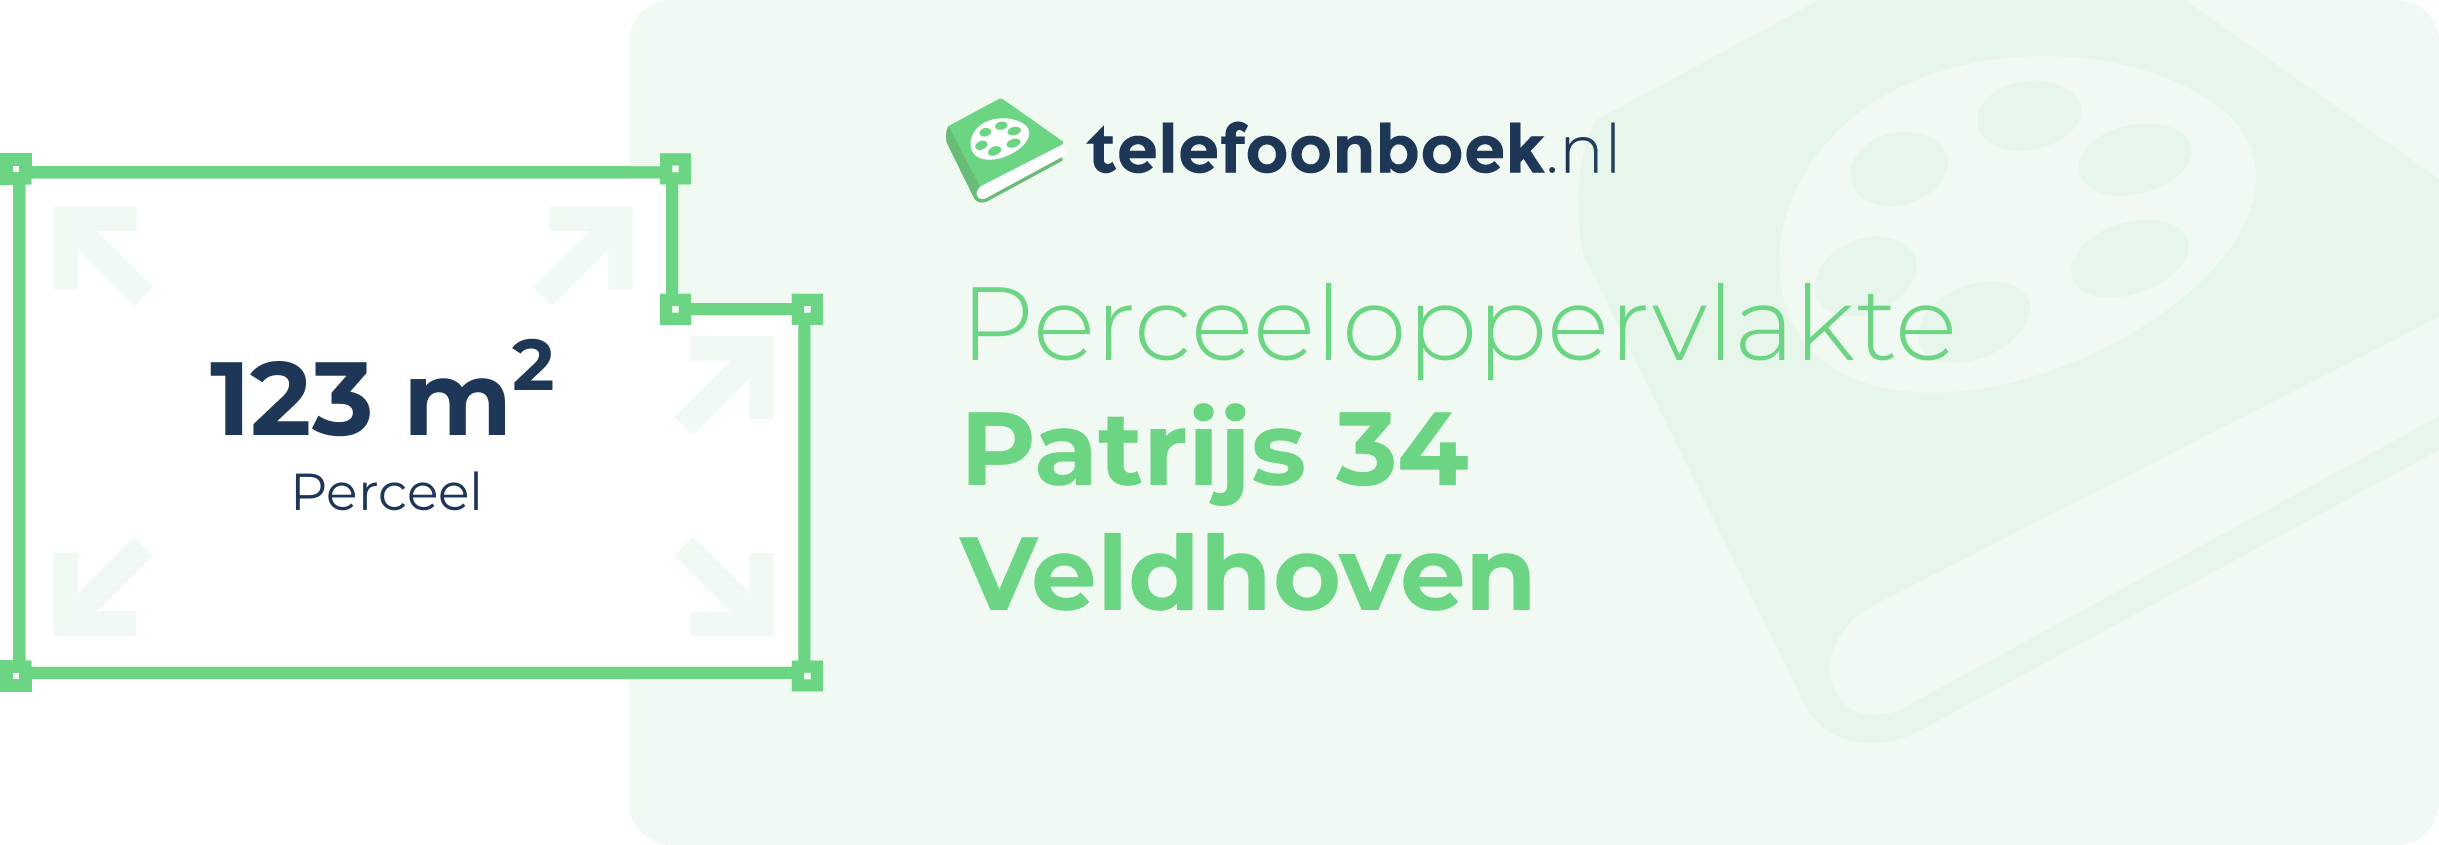 Perceeloppervlakte Patrijs 34 Veldhoven